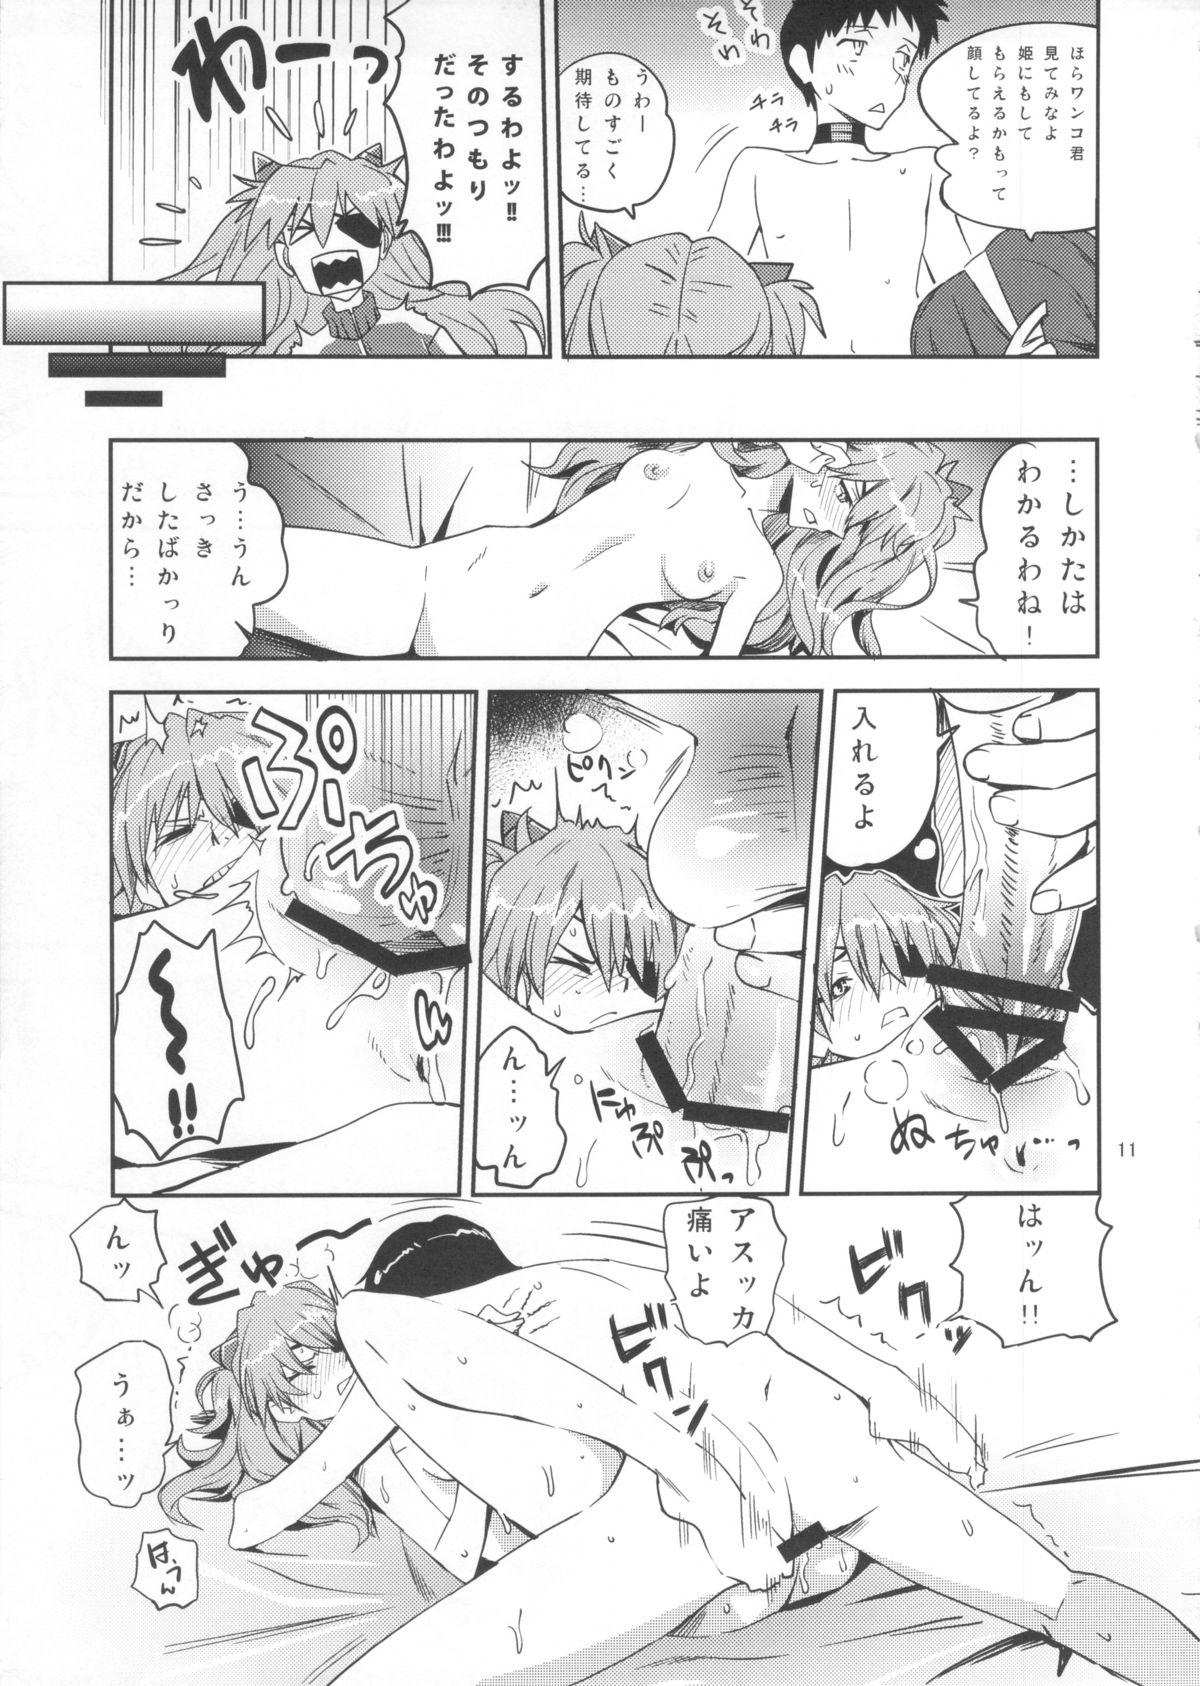 Mulata Anata no Shiranai Sekai - Neon genesis evangelion Teenager - Page 10